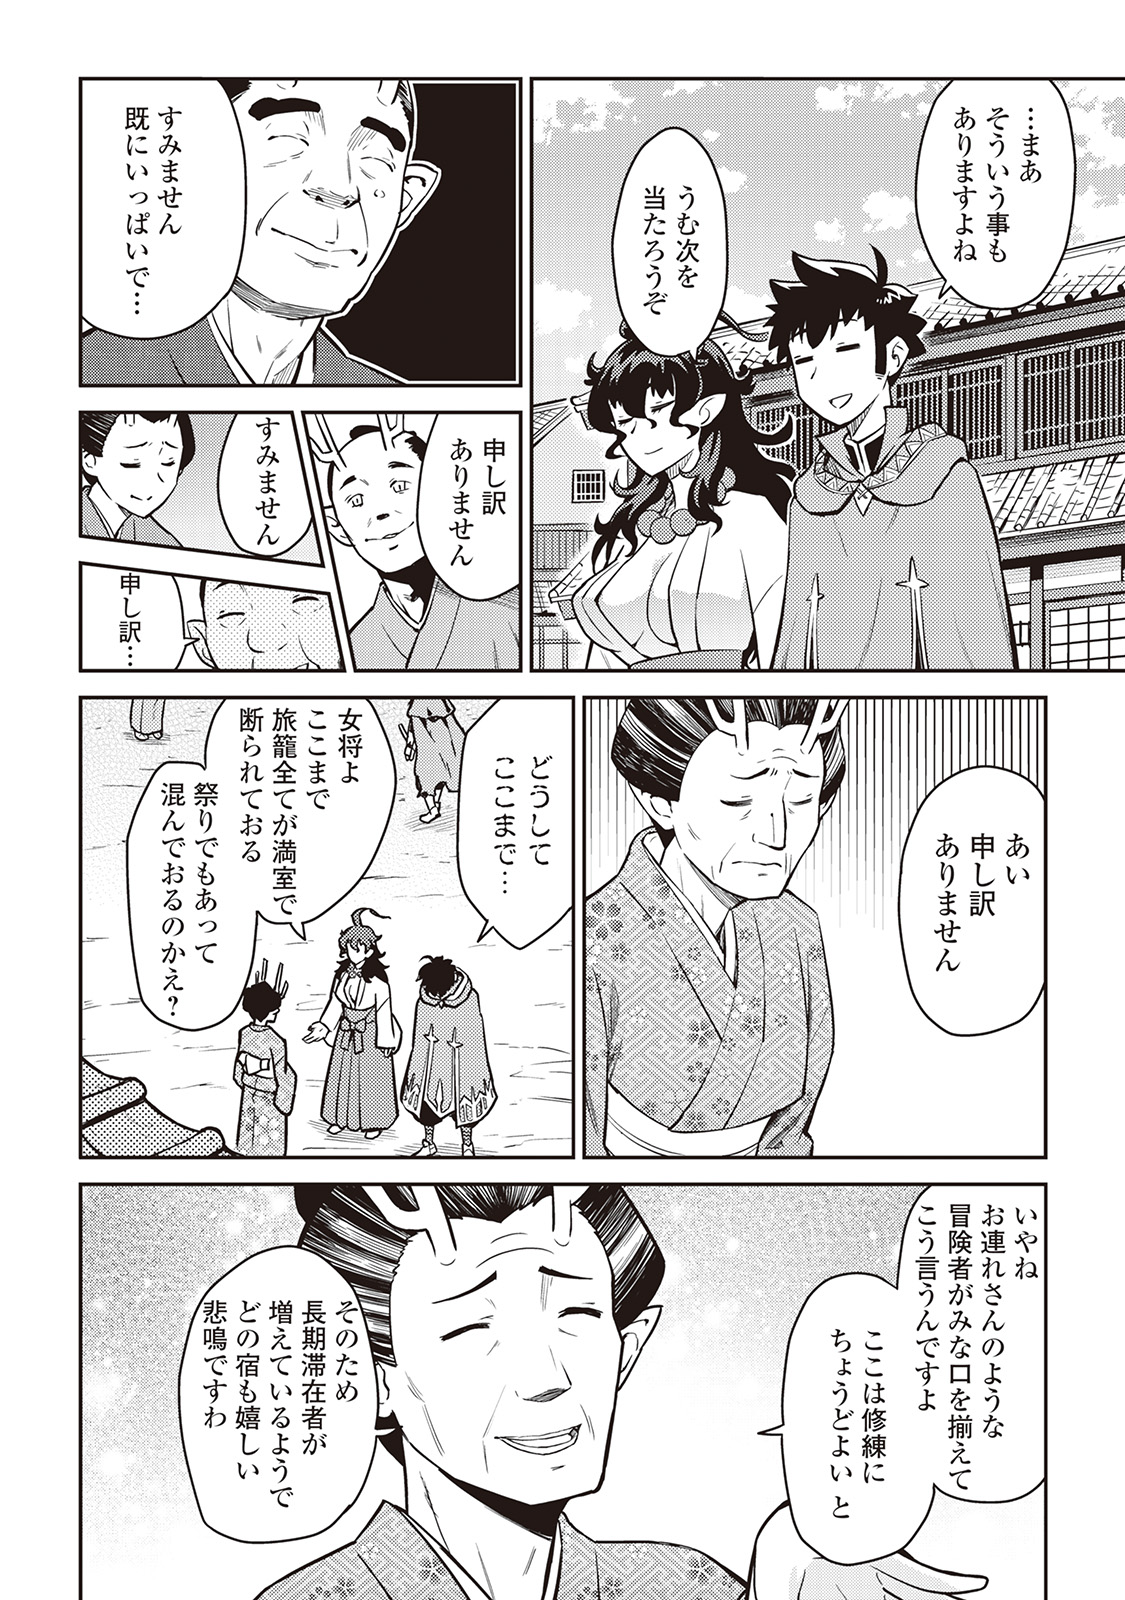 Toaru Ossan no VRMMO Katsudouki - Chapter 49 - Page 2